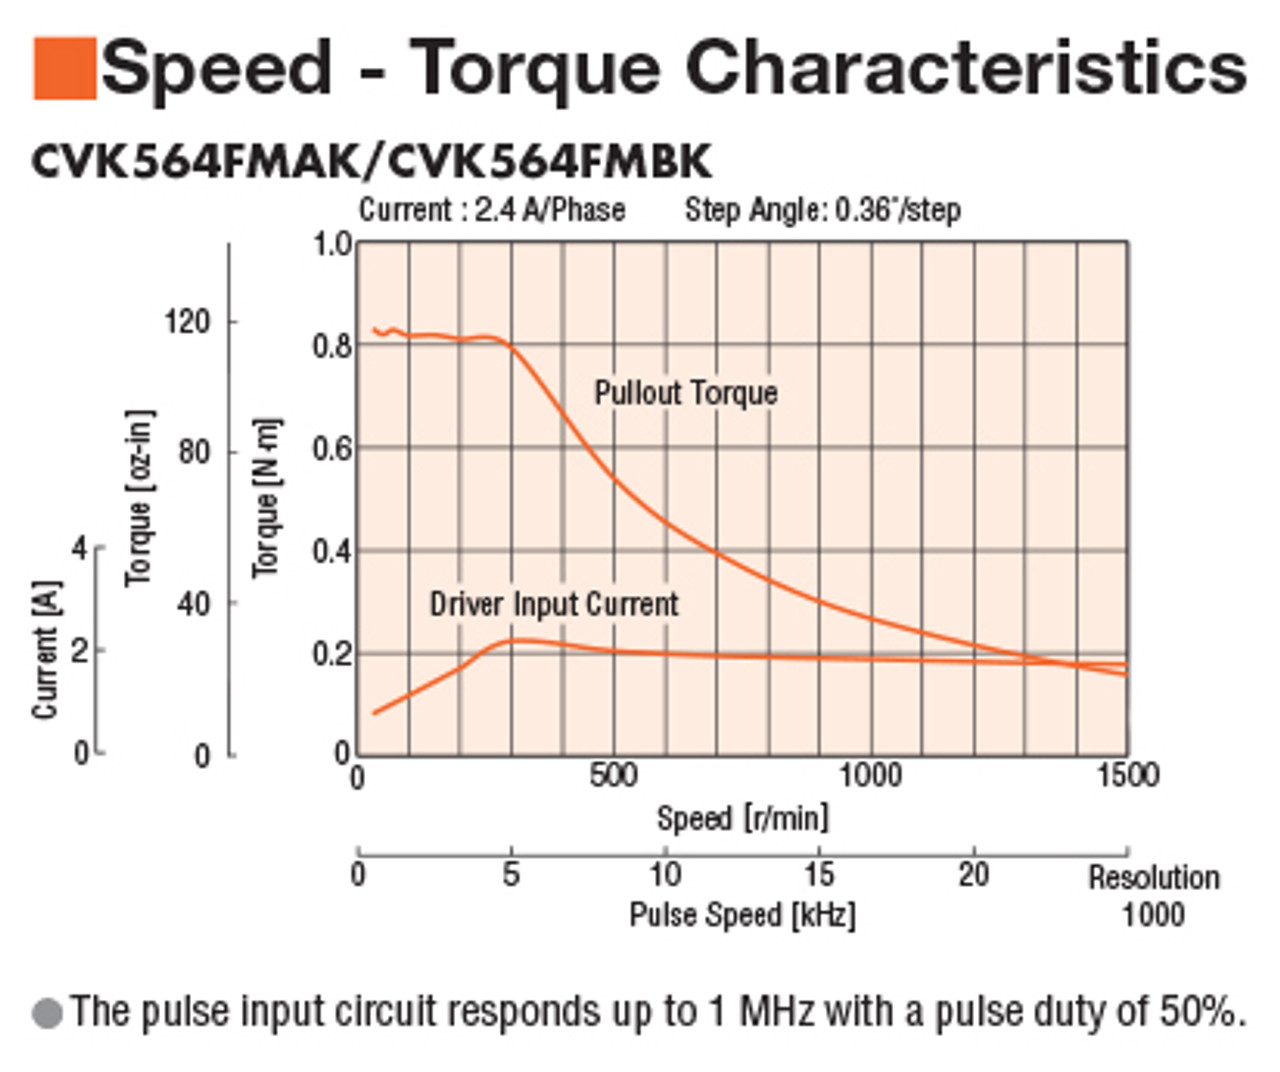 PKP564FMN24A - Speed-Torque